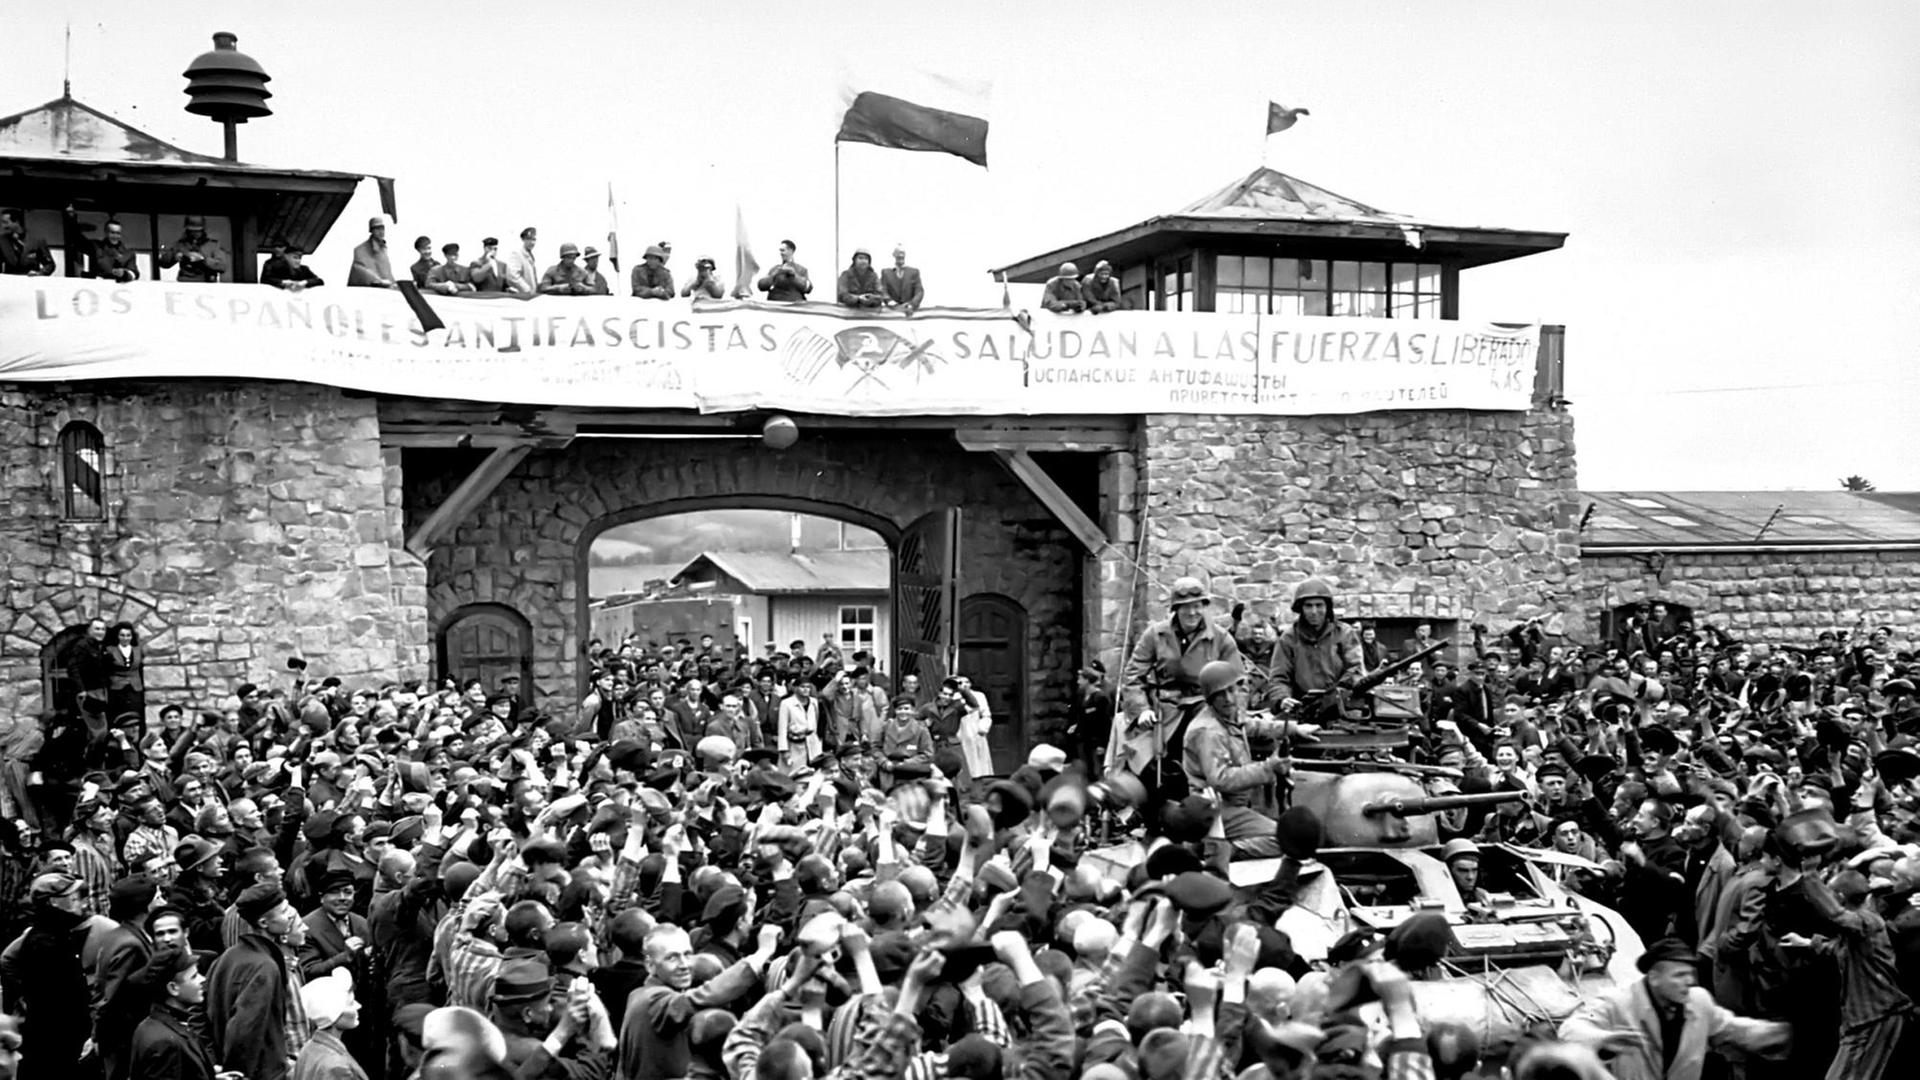 Die 11. Panzerdivision der US-Armee erreicht am 06. Mai 1945 das Konzentrationslager Mauthausen und wird von spanischen Antifaschisten begrüßt.